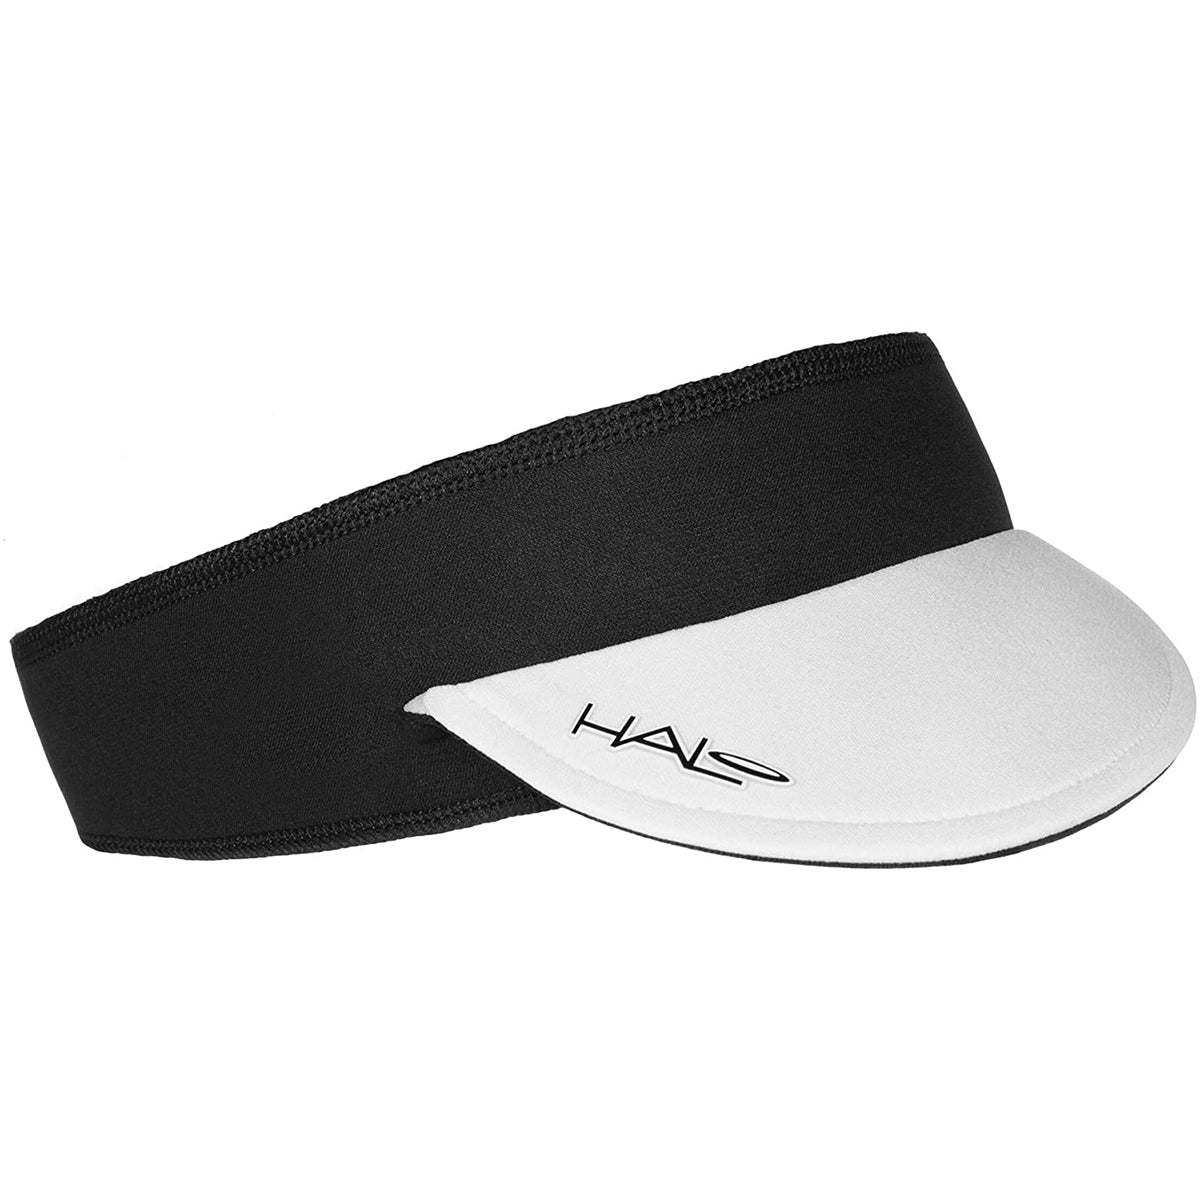 Halo Headband Visorband Visor - White Halo